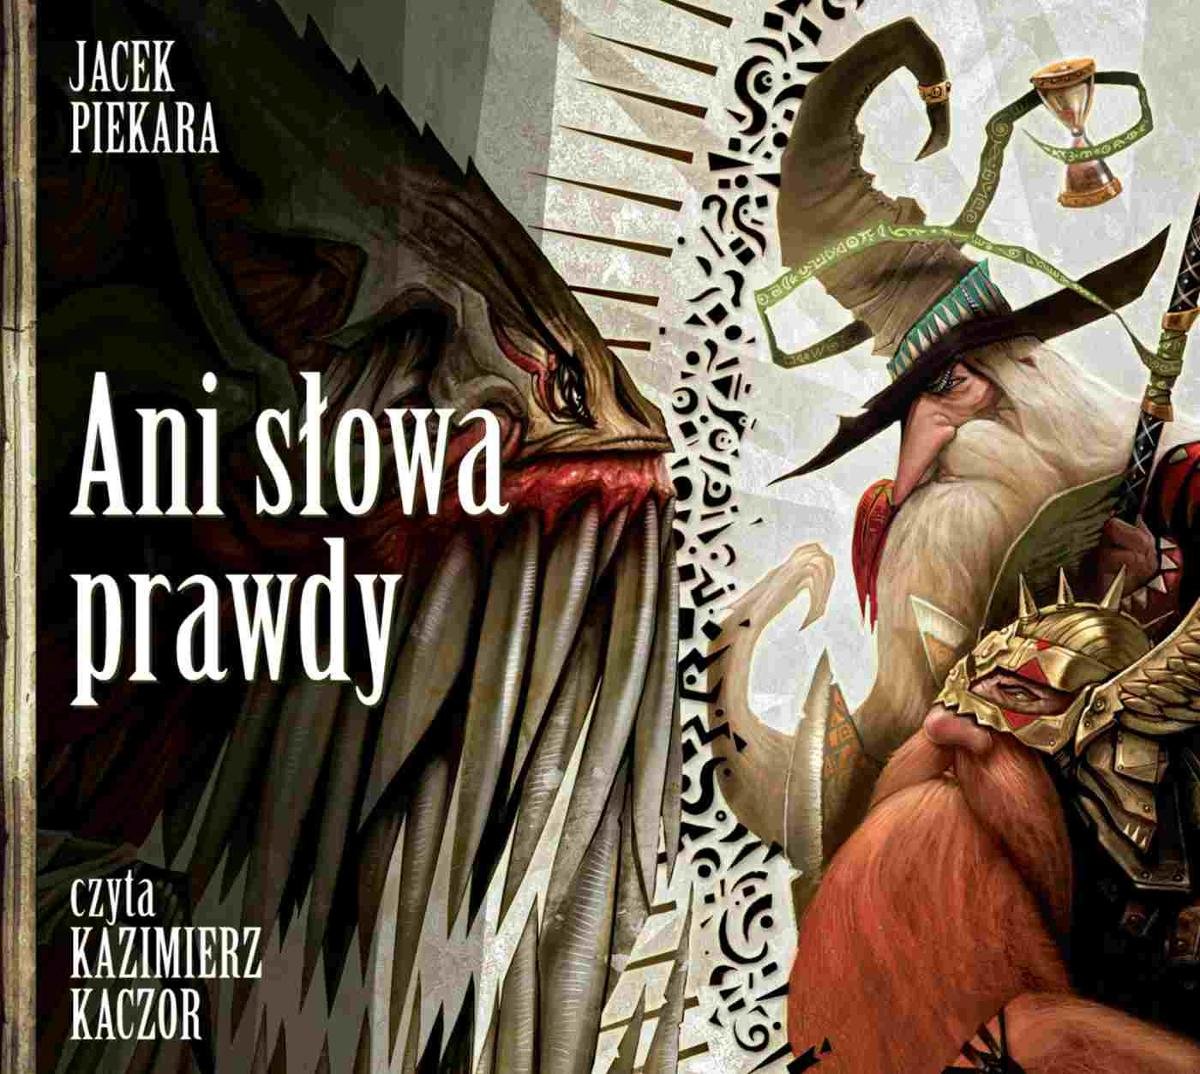 Piekara Jacek - Ani Słowa Prawdy